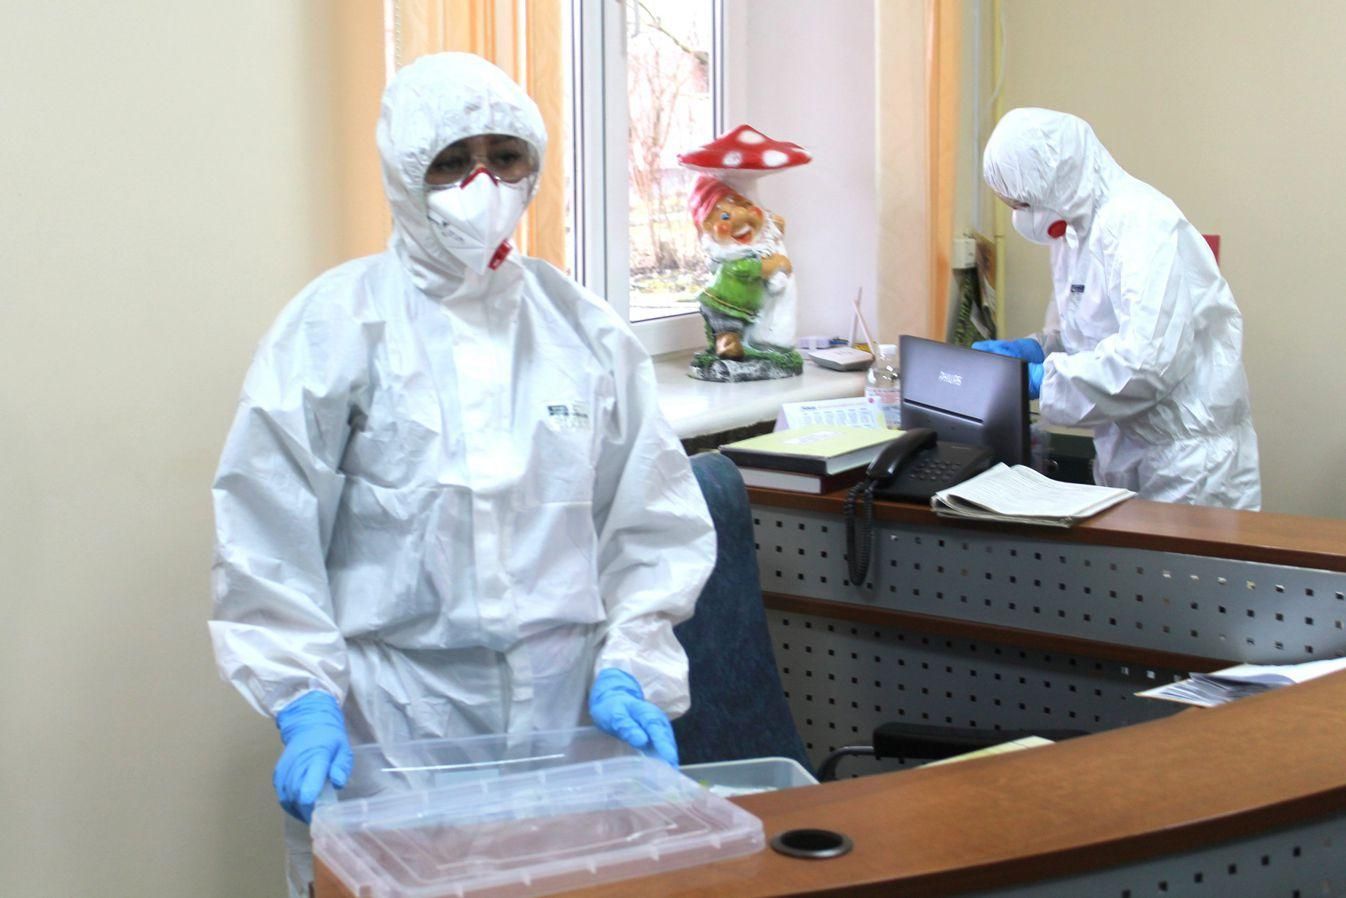 Скільки в Україні інфекційних боксів для пацієнтів з підозрою на коронавірус: як вони виглядають